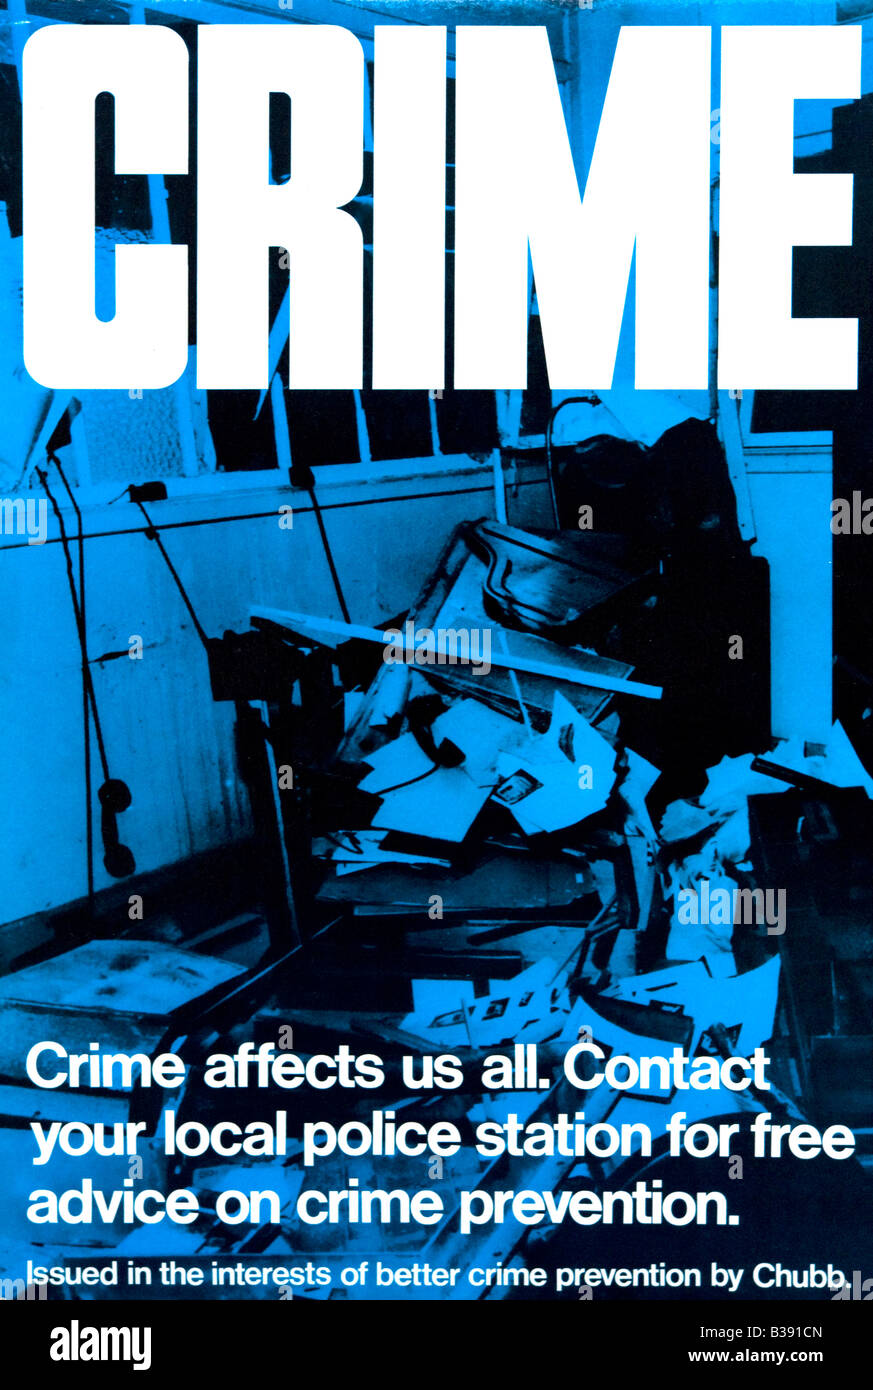 Originale degli anni sessanta contatore scheda Display superiore nella prevenzione della criminalità da Chubb per solo uso editoriale Foto Stock